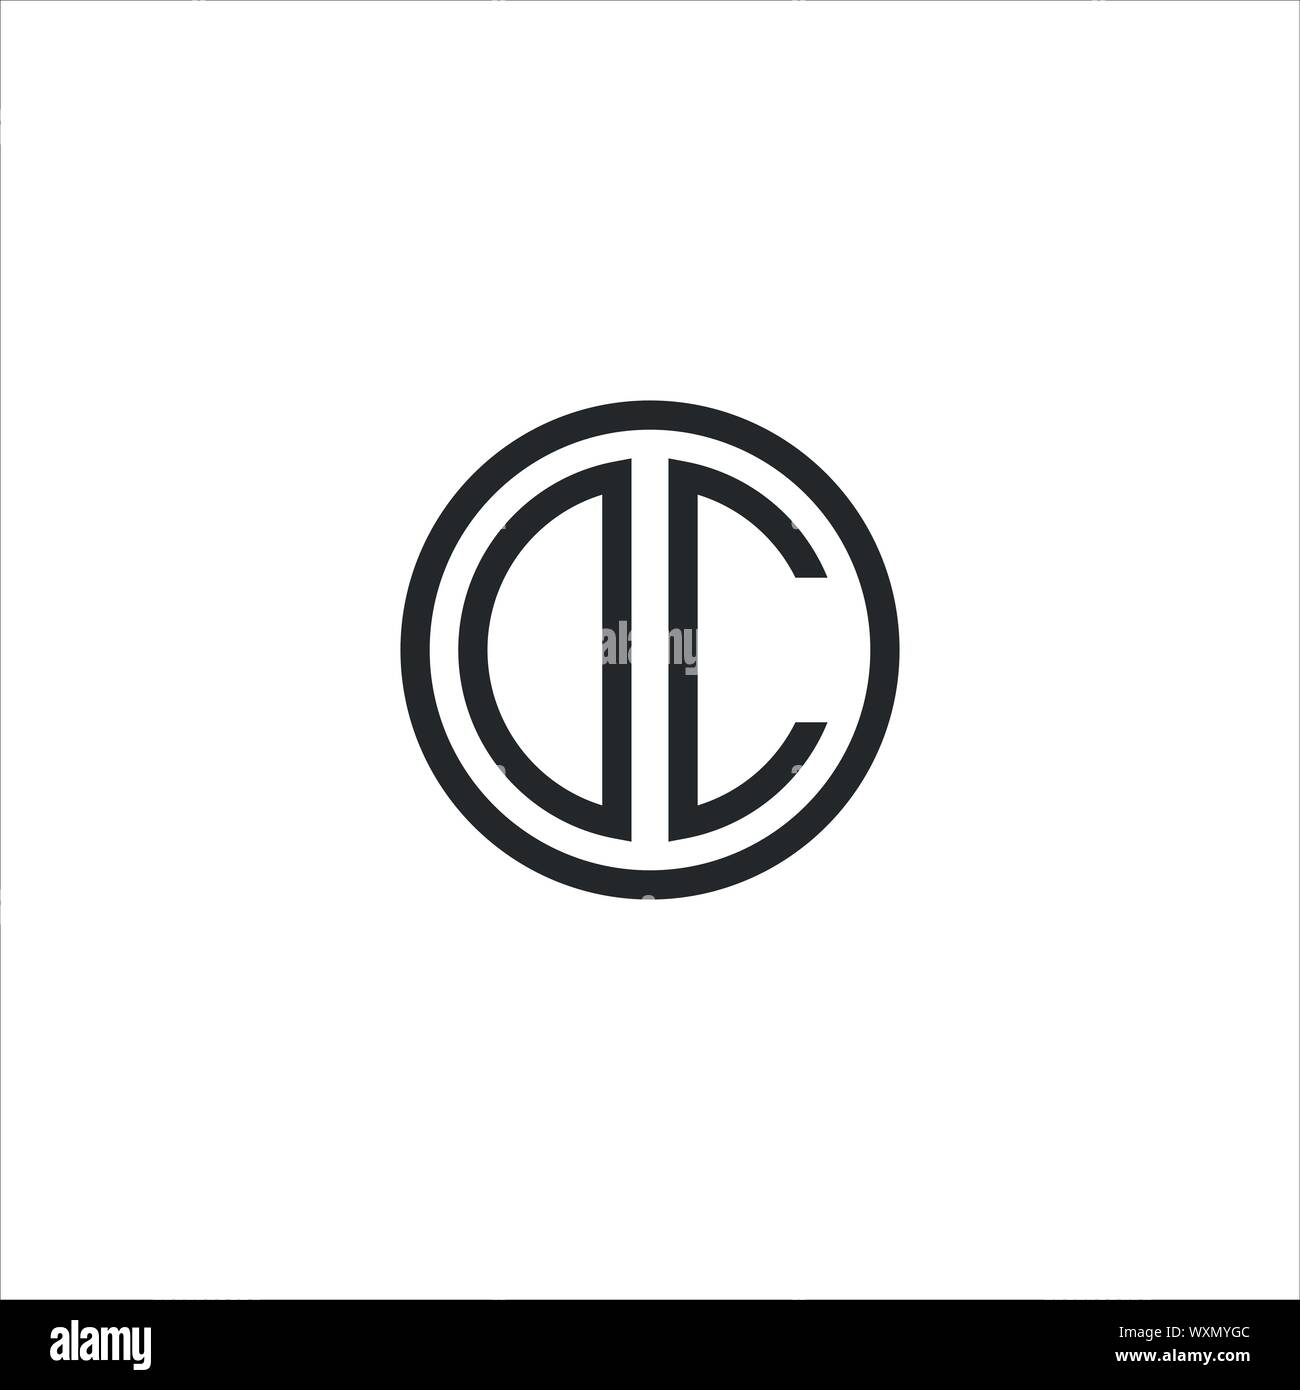 Die Logo-CD, dc, d Inside c gerundet Schreiben negativen Raum logo Stock Vektor